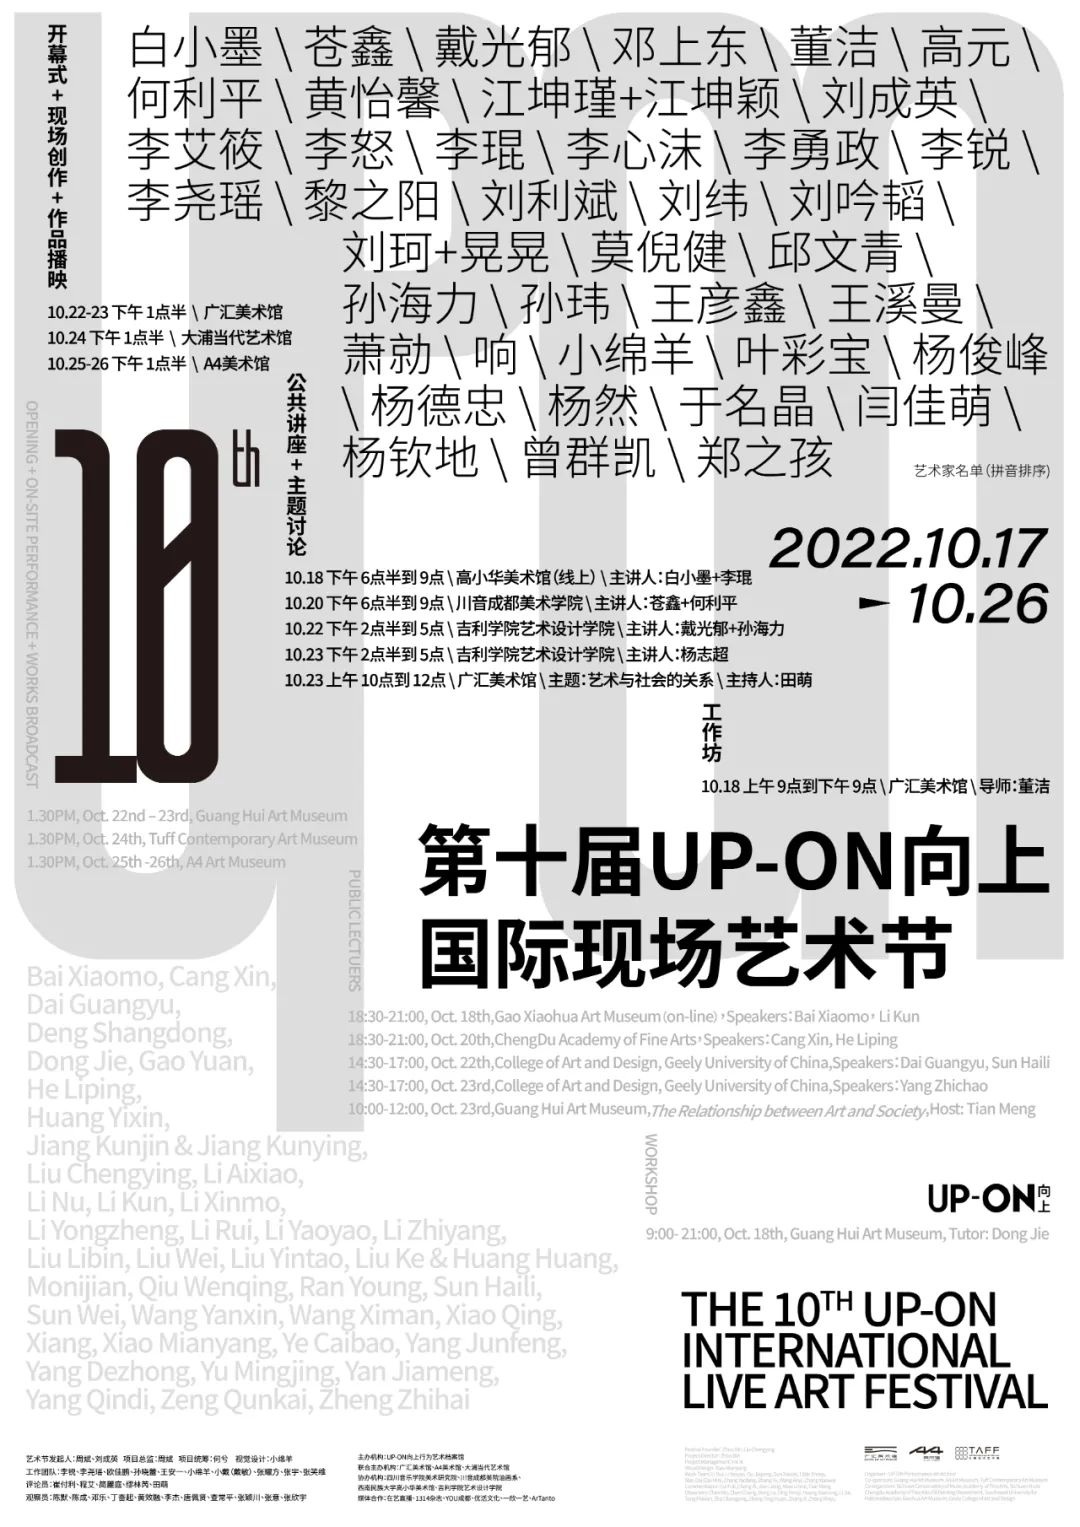 第十届UP-ON向上国际现场艺术节